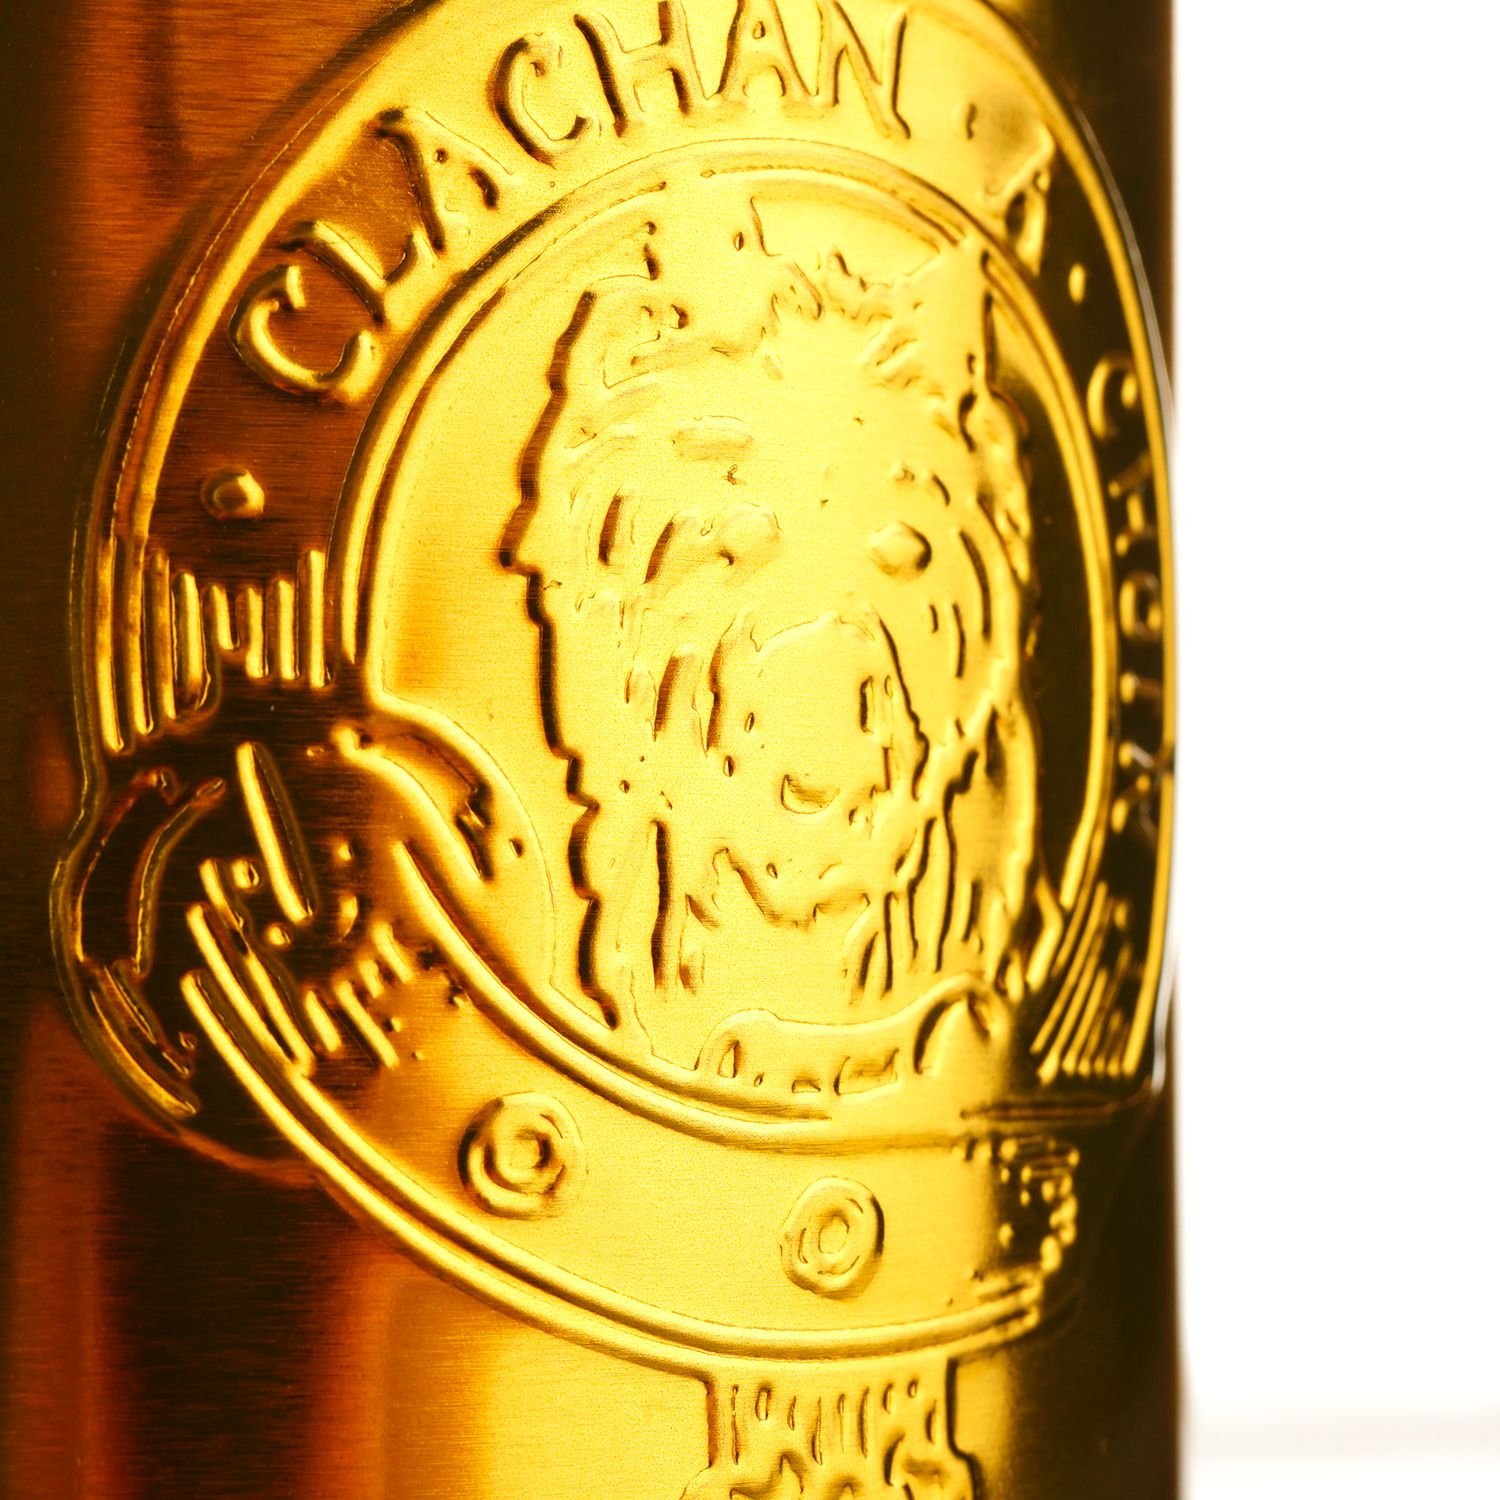 Віскі Mortlach Murray McDavid 19 Years Old Single Malt Scotch Whisky, у подарунковій упаковці, 55,1%, 0,7 л - фото 7